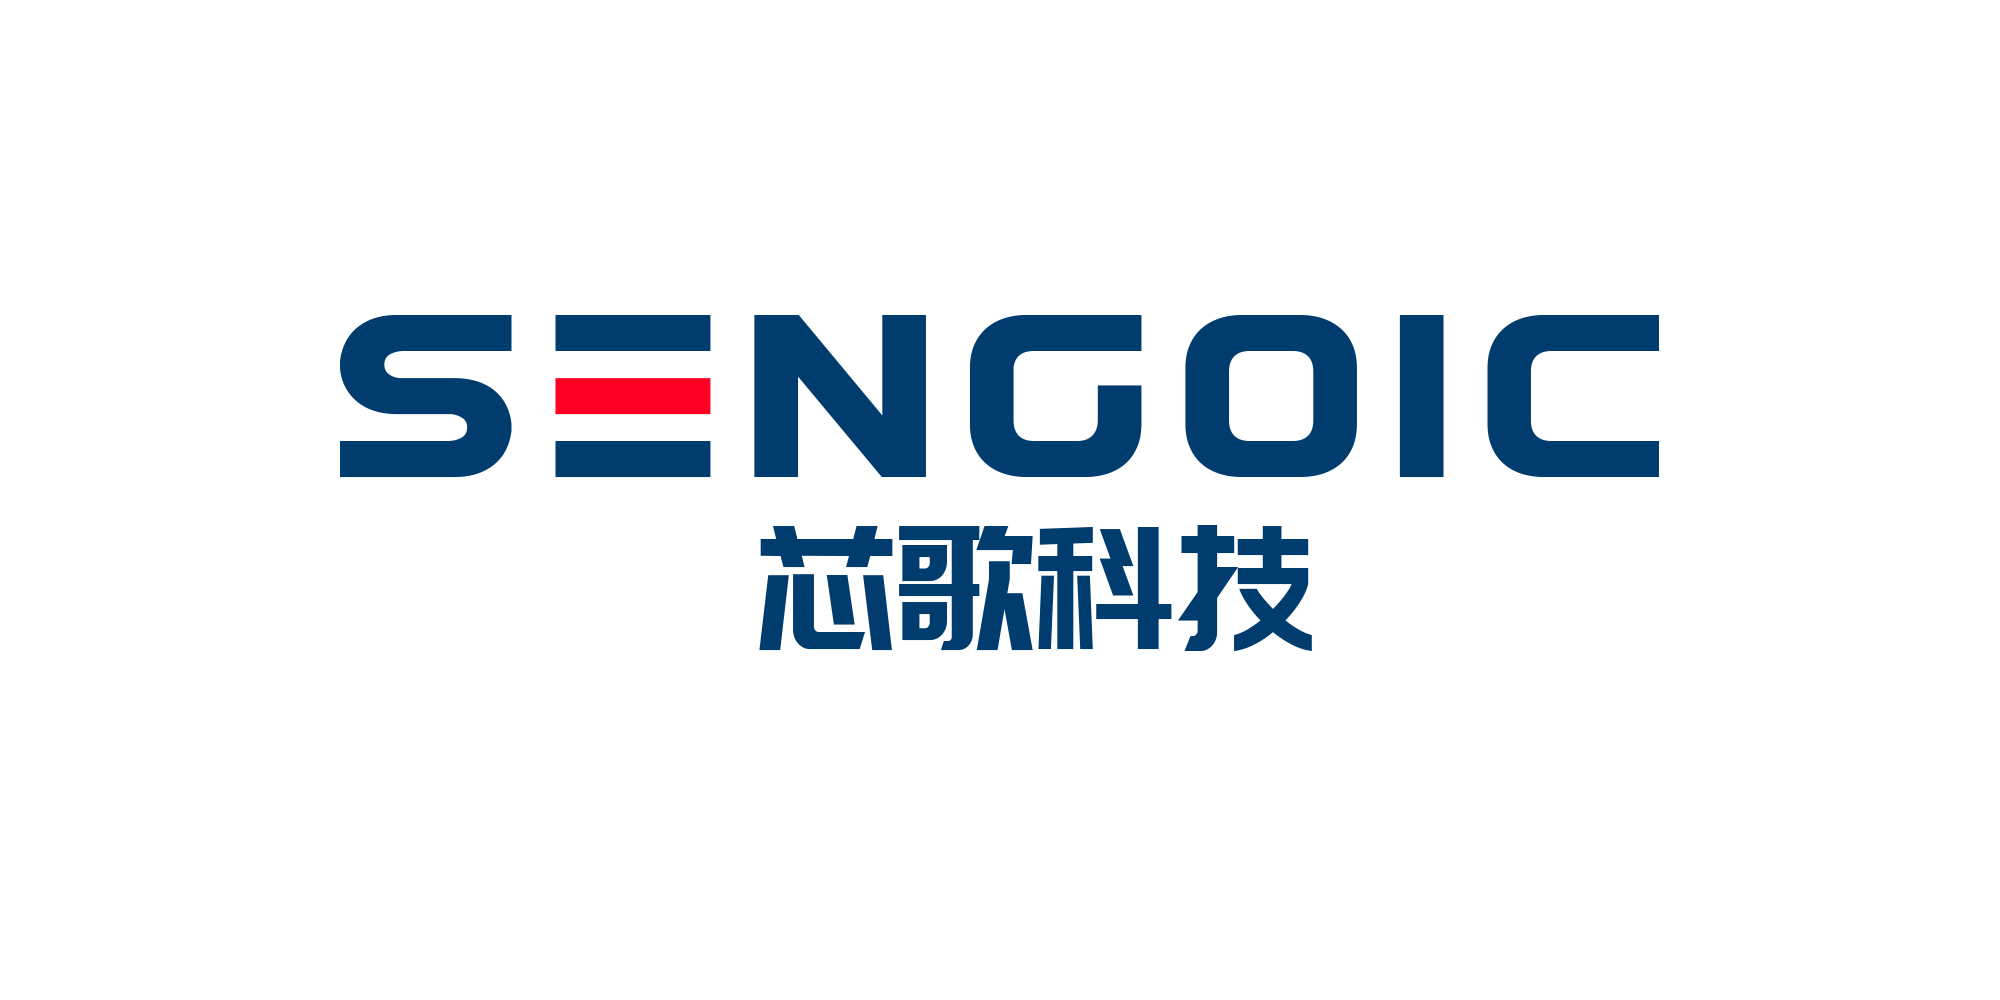 Shanghai Xinge Intelligent Technology Co. Ltd.